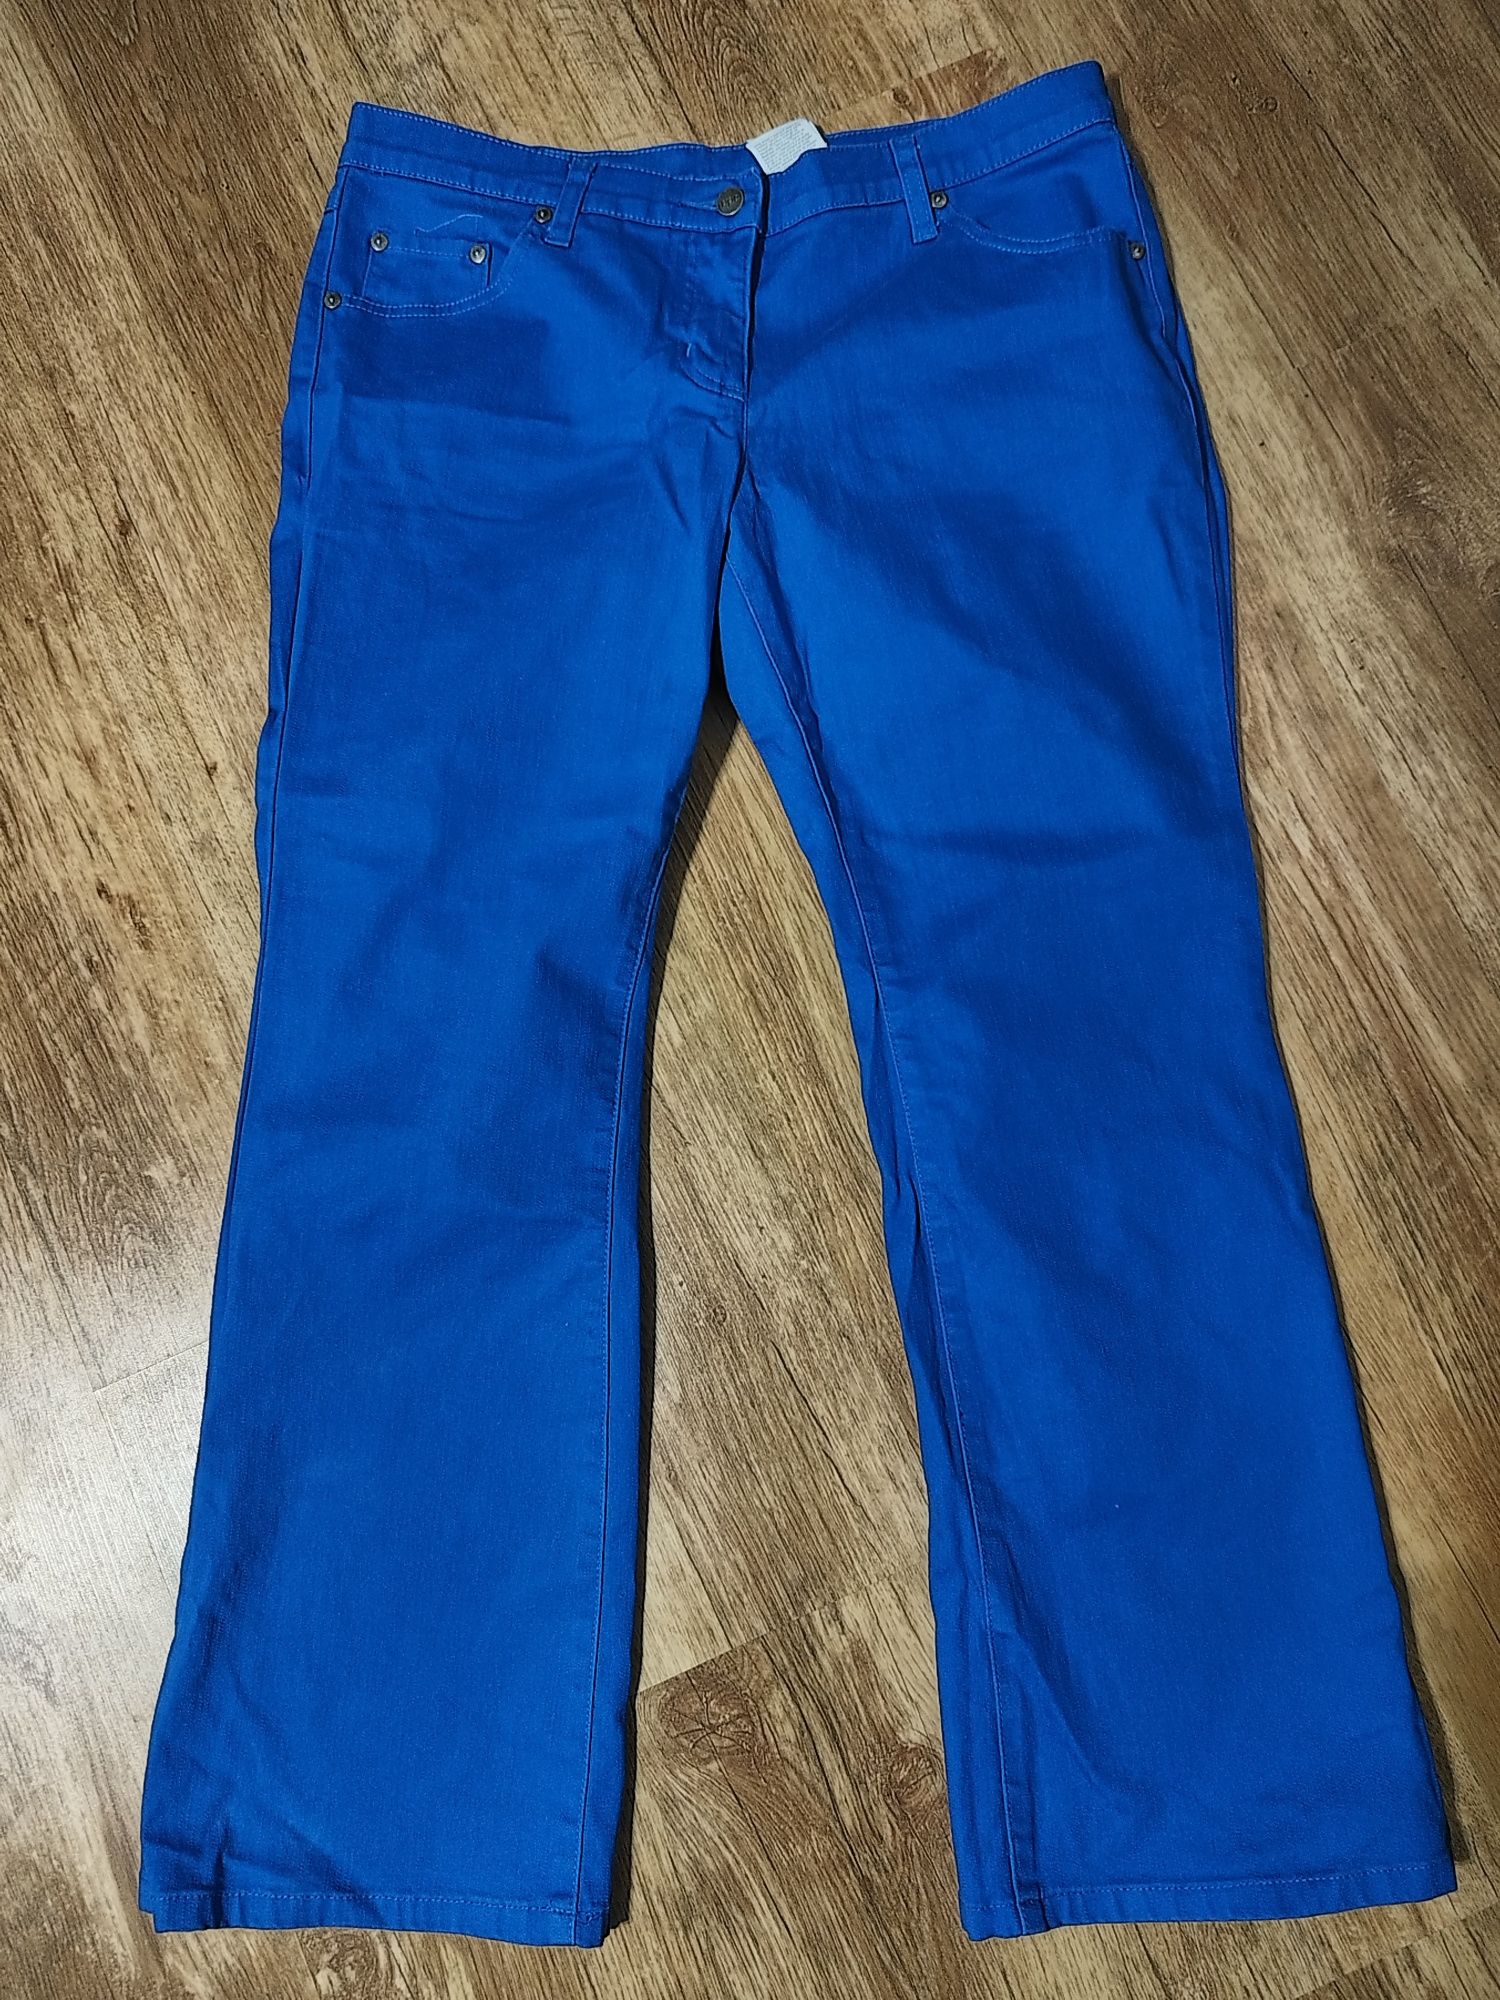 Niebieskie jeansy szerokie nogawki